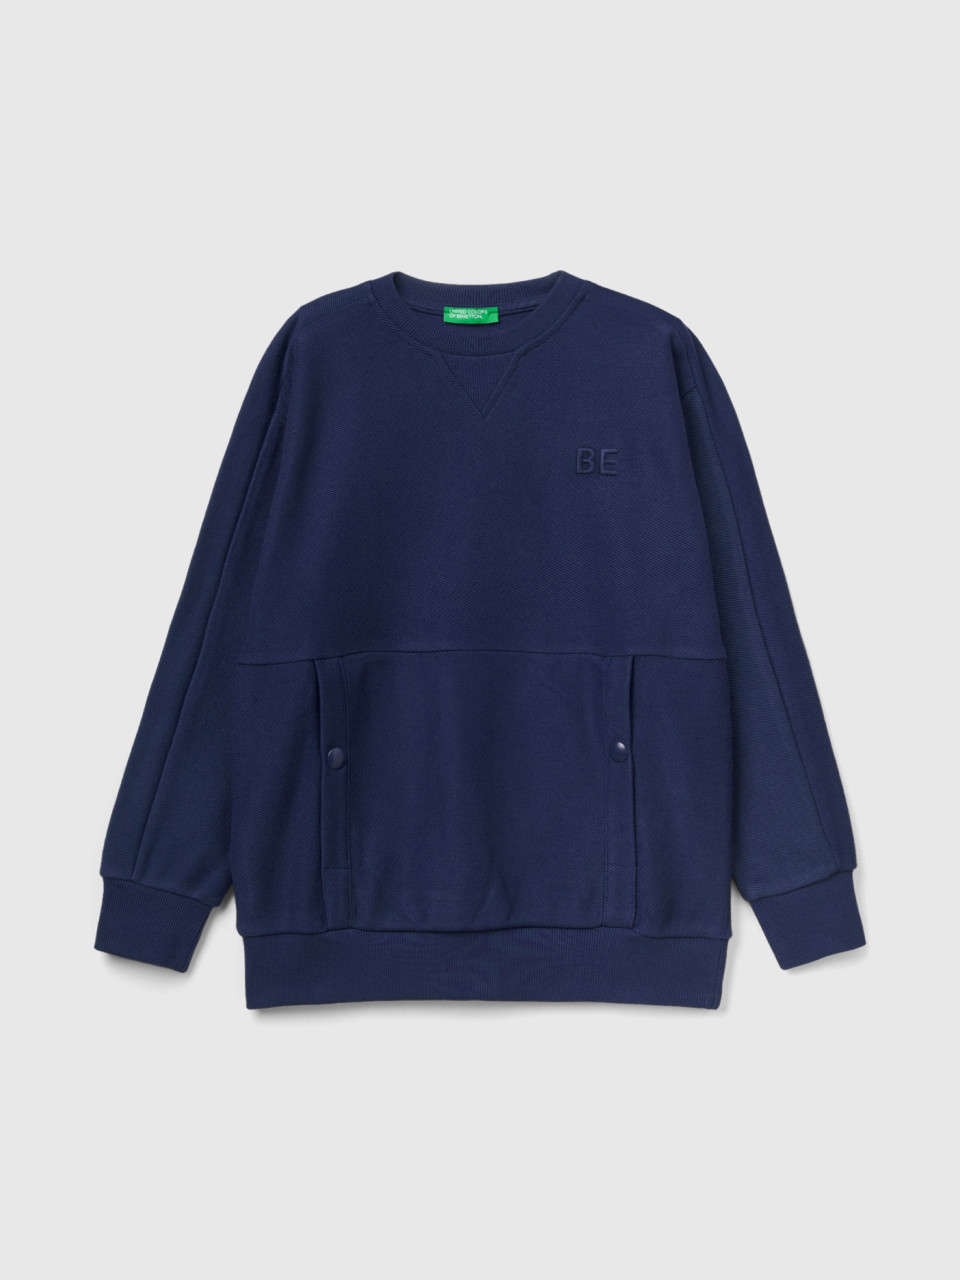 Benetton, Sweatshirt Mit Taschen Und be-stickerei, Dunkelblau, male